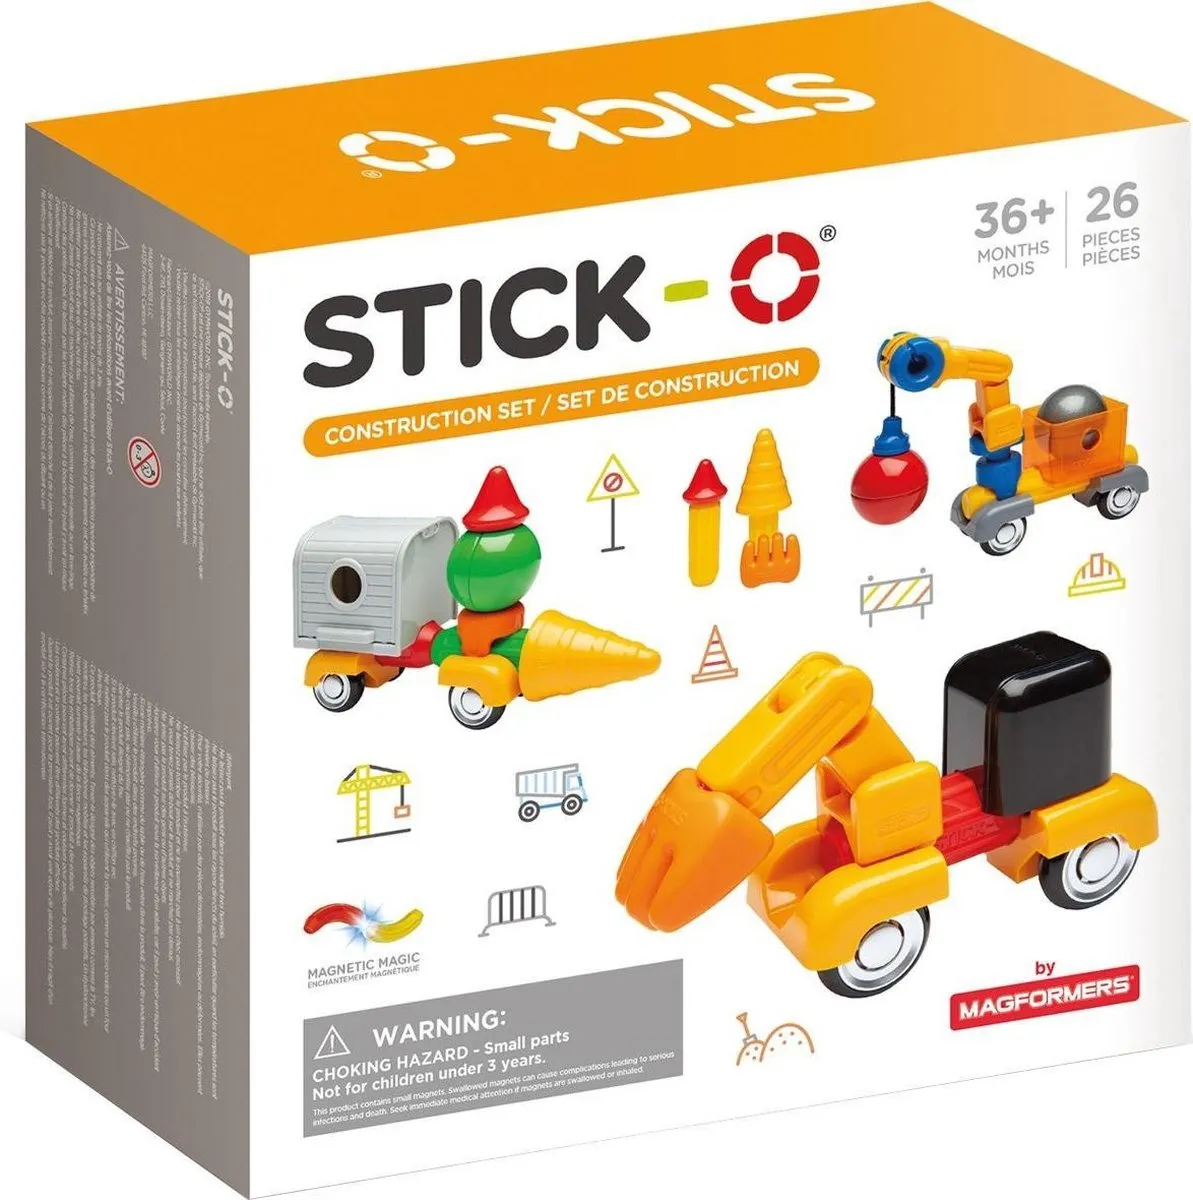 Stick-O Constructieset - magnetisch speelgoed - 32 modellen - magneten speelgoed - baby blokken speelgoed